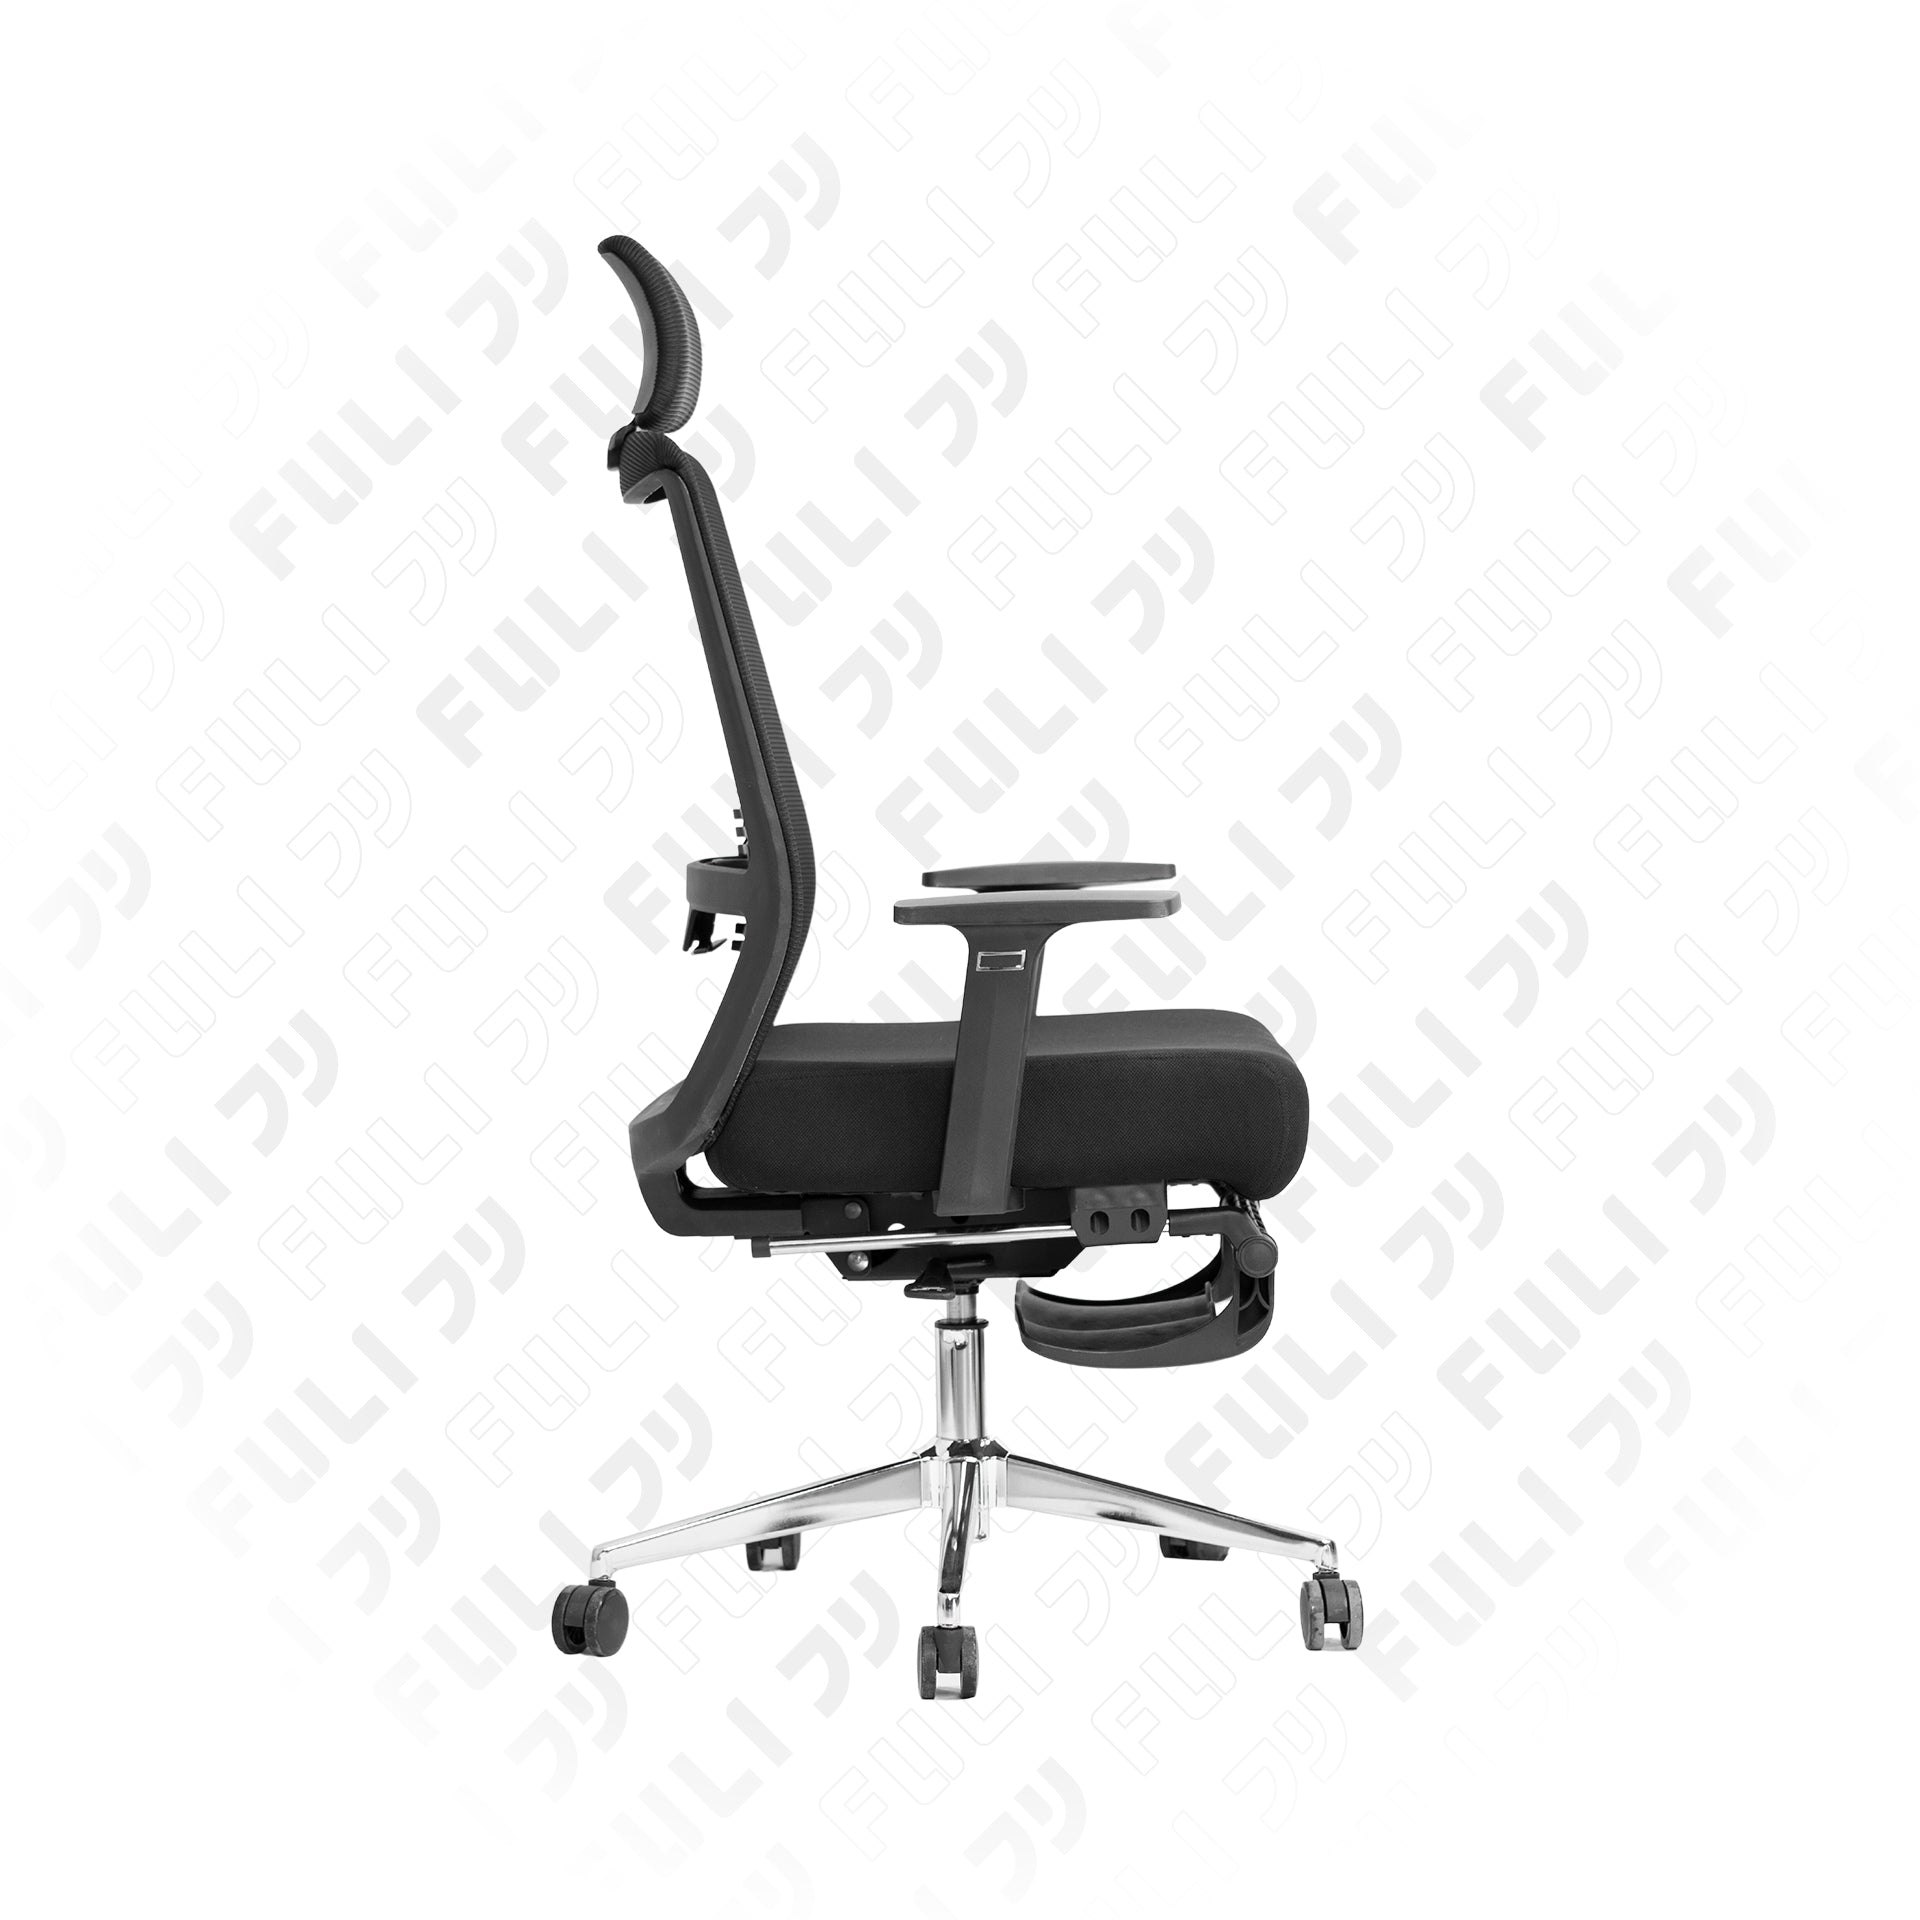 เก้าอี้เพื่อสุขภาพ ErgoMesh Chair รุ่น X9 - สีดำ | FULI X9 Memory Foam ErgoMesh Office Chair - Black